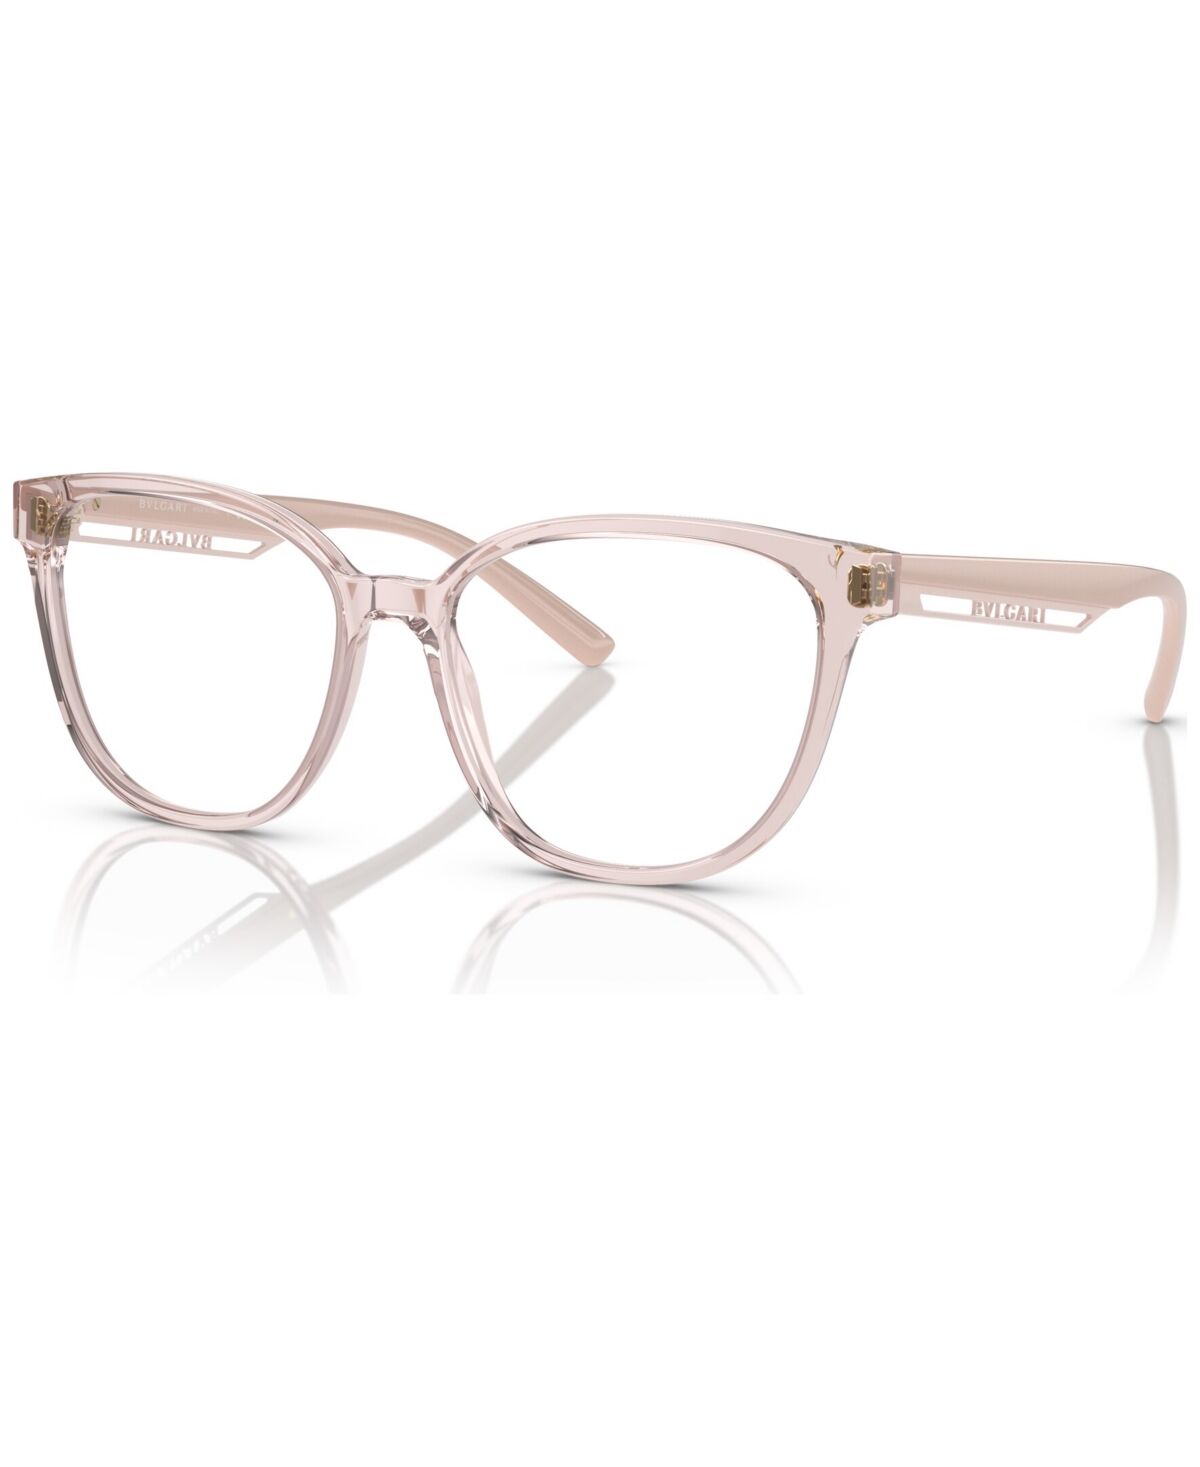 Bvlgari Women's Square Eyeglasses, BV4219 55 - Transparent Pink